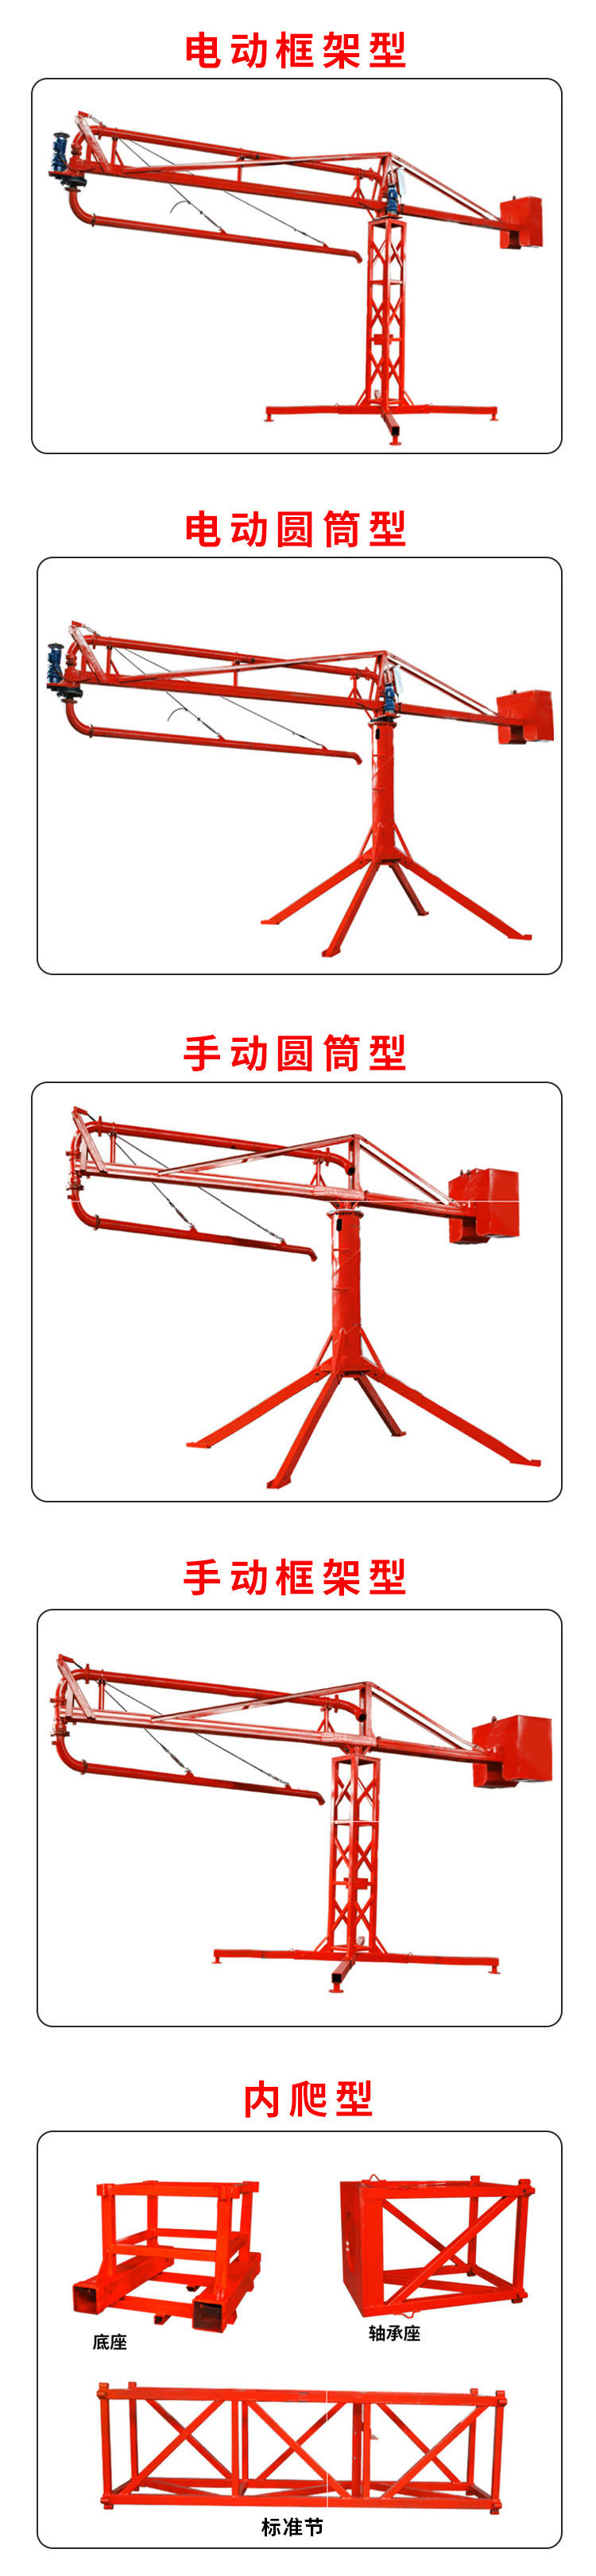 红河混凝土布料机 内爬式手动布料机 电动水泥布料机 云南科昆 多轴承手动布料机示例图11